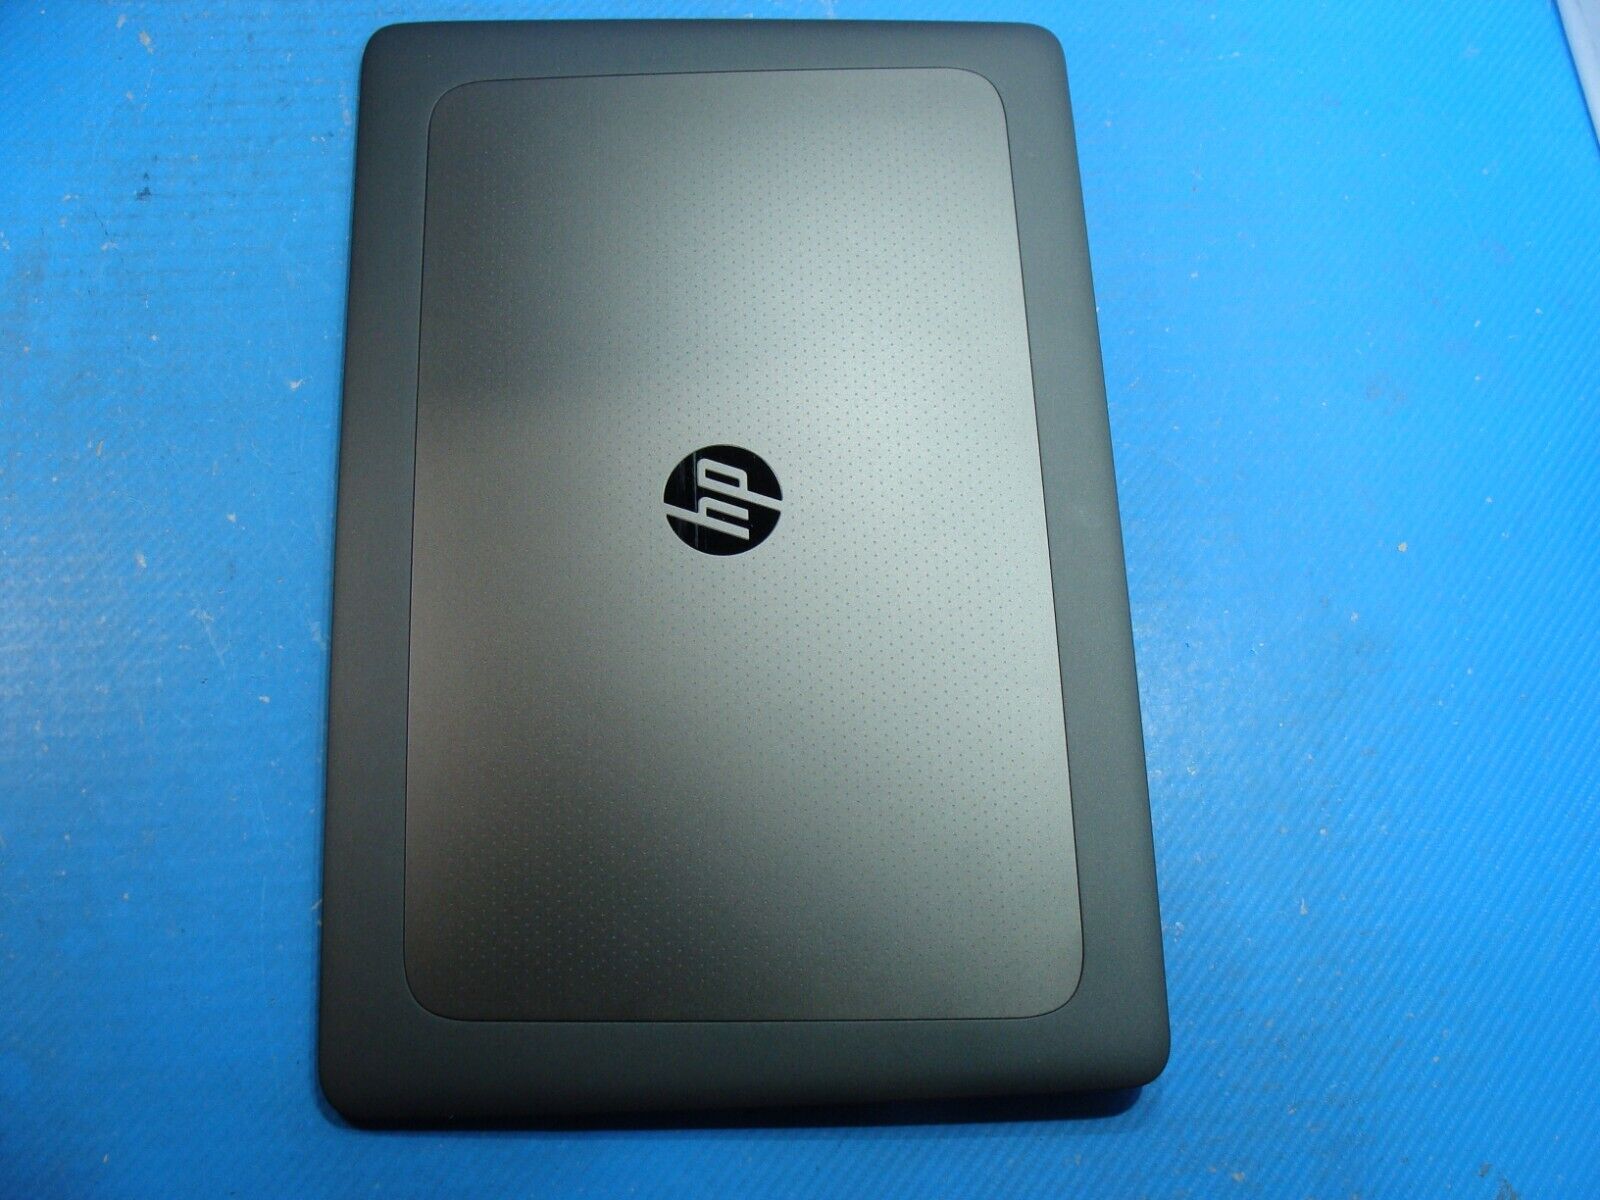 HP ZBook 17 G3 17.3